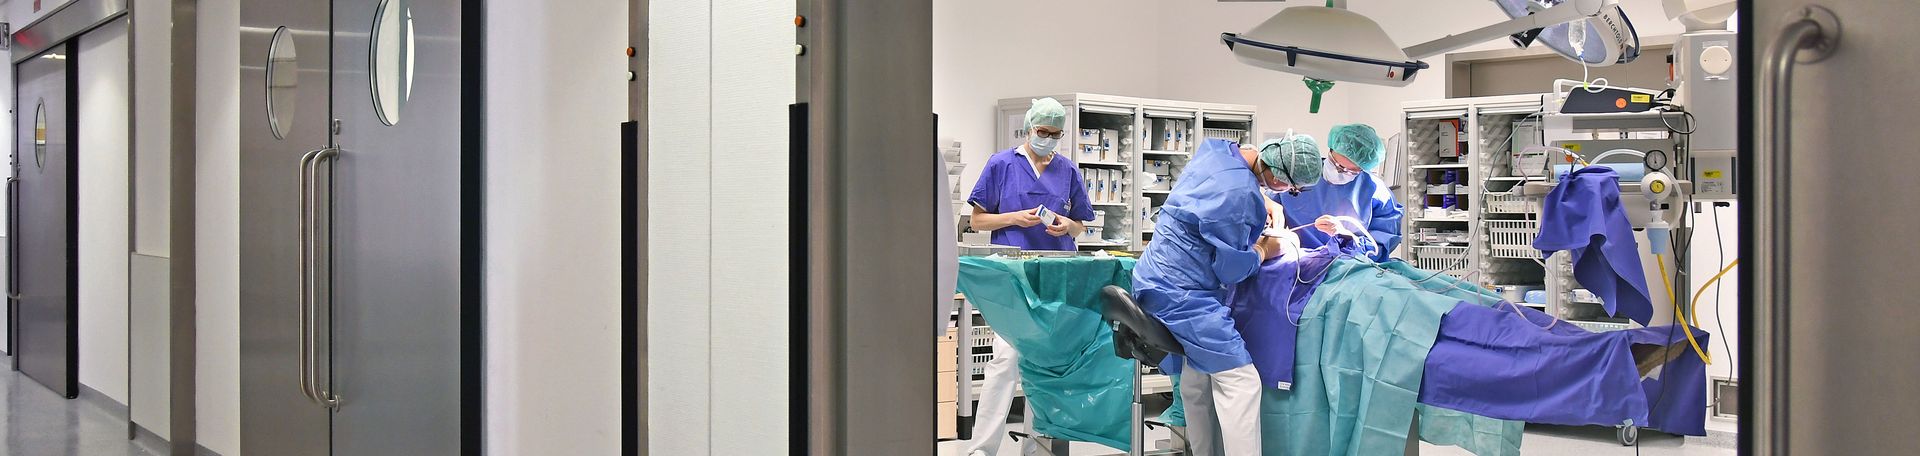 Illustrationsbild: Ärzte während einer Operations